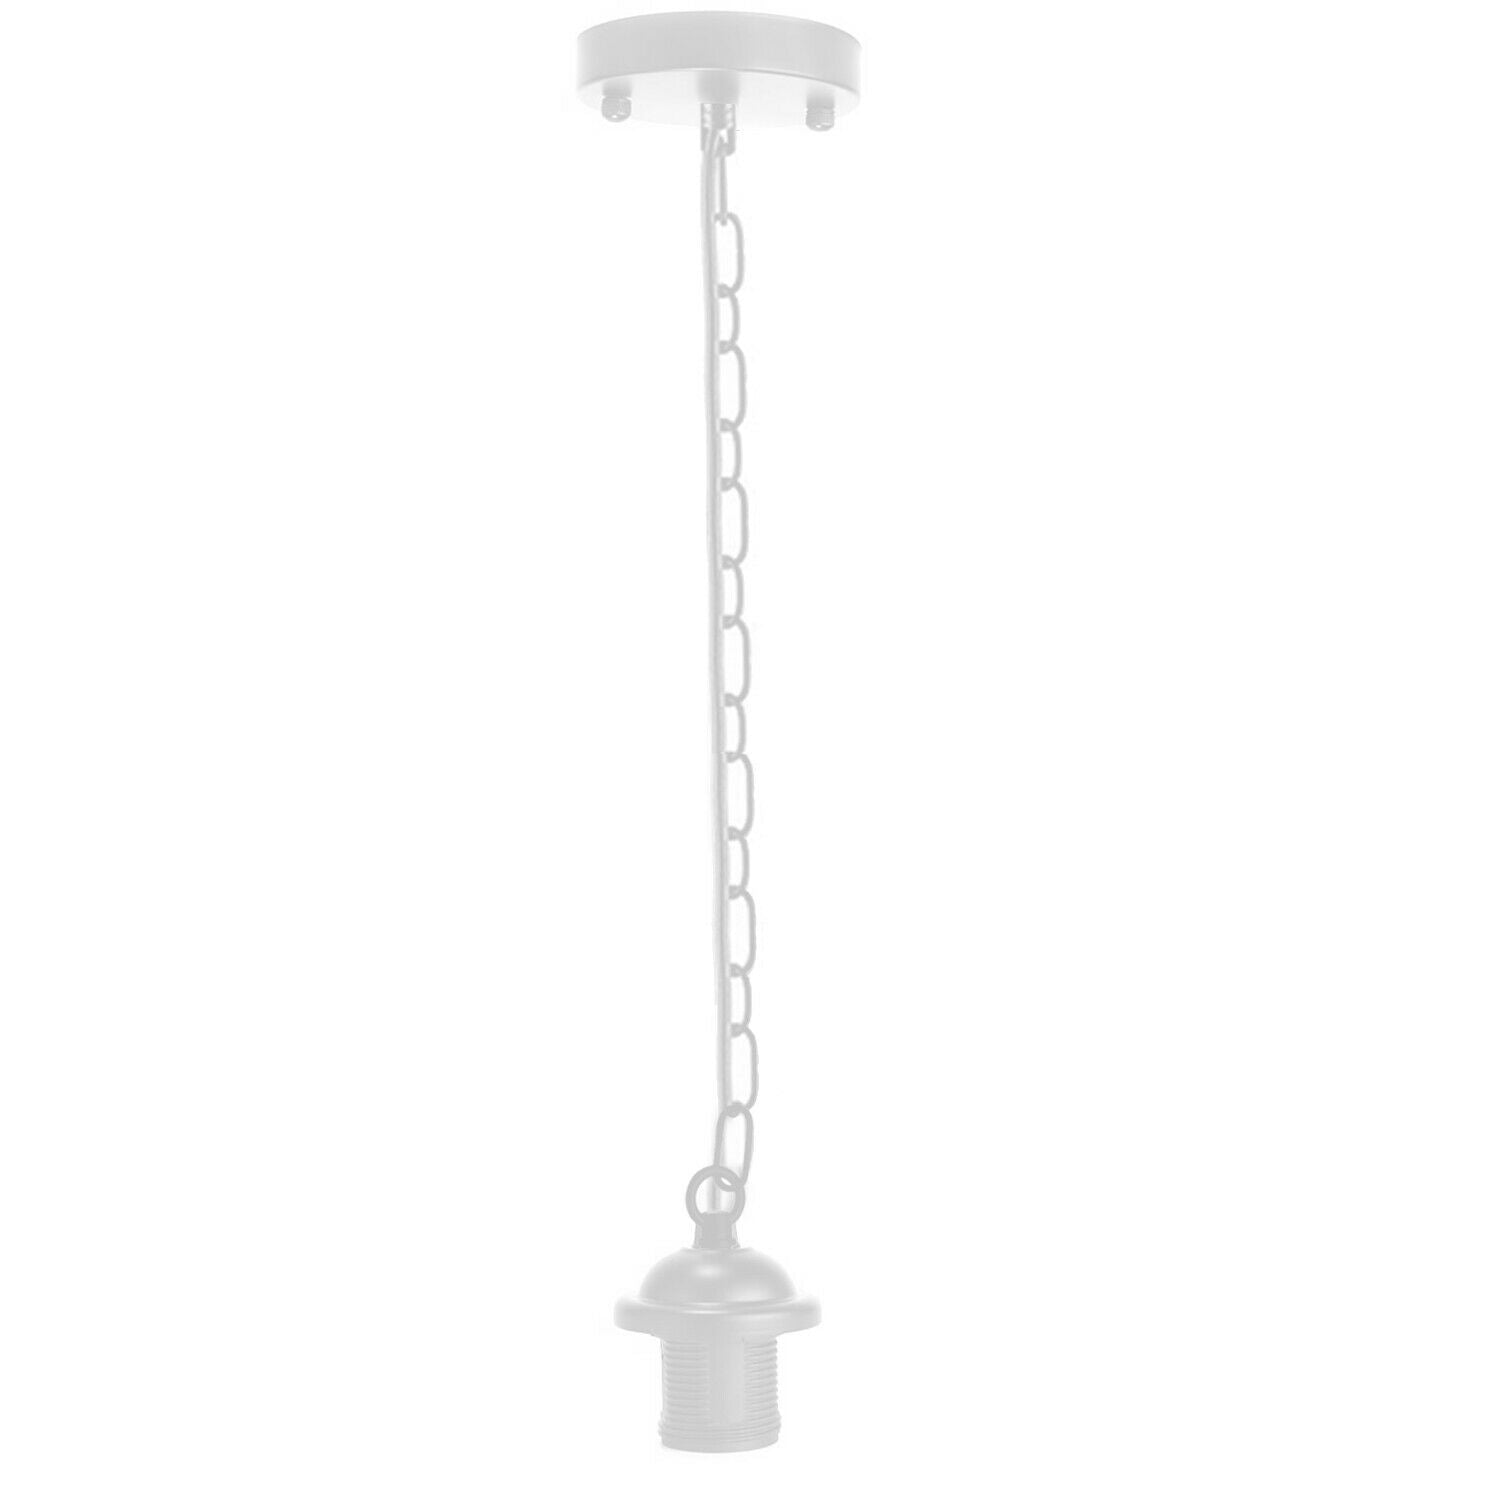 White Metal Ceiing E27 Lamp Holder Pendant Light With Chain~1779 - LEDSone UK Ltd